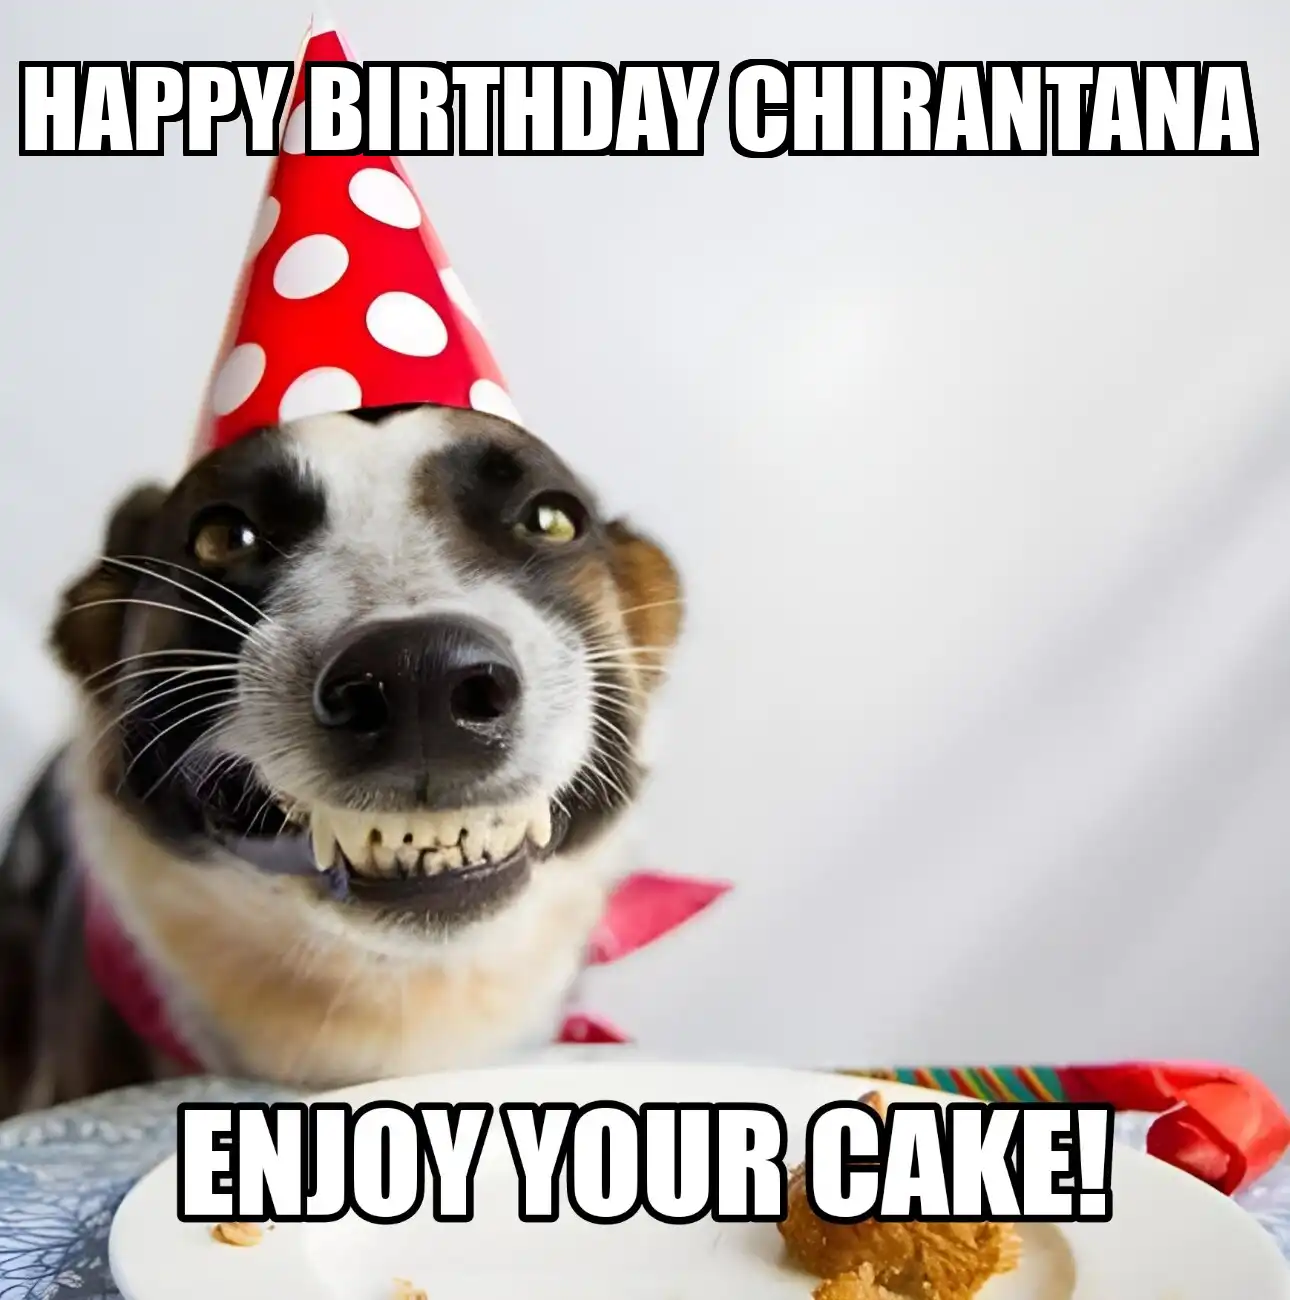 Happy Birthday Chirantana Enjoy Your Cake Dog Meme